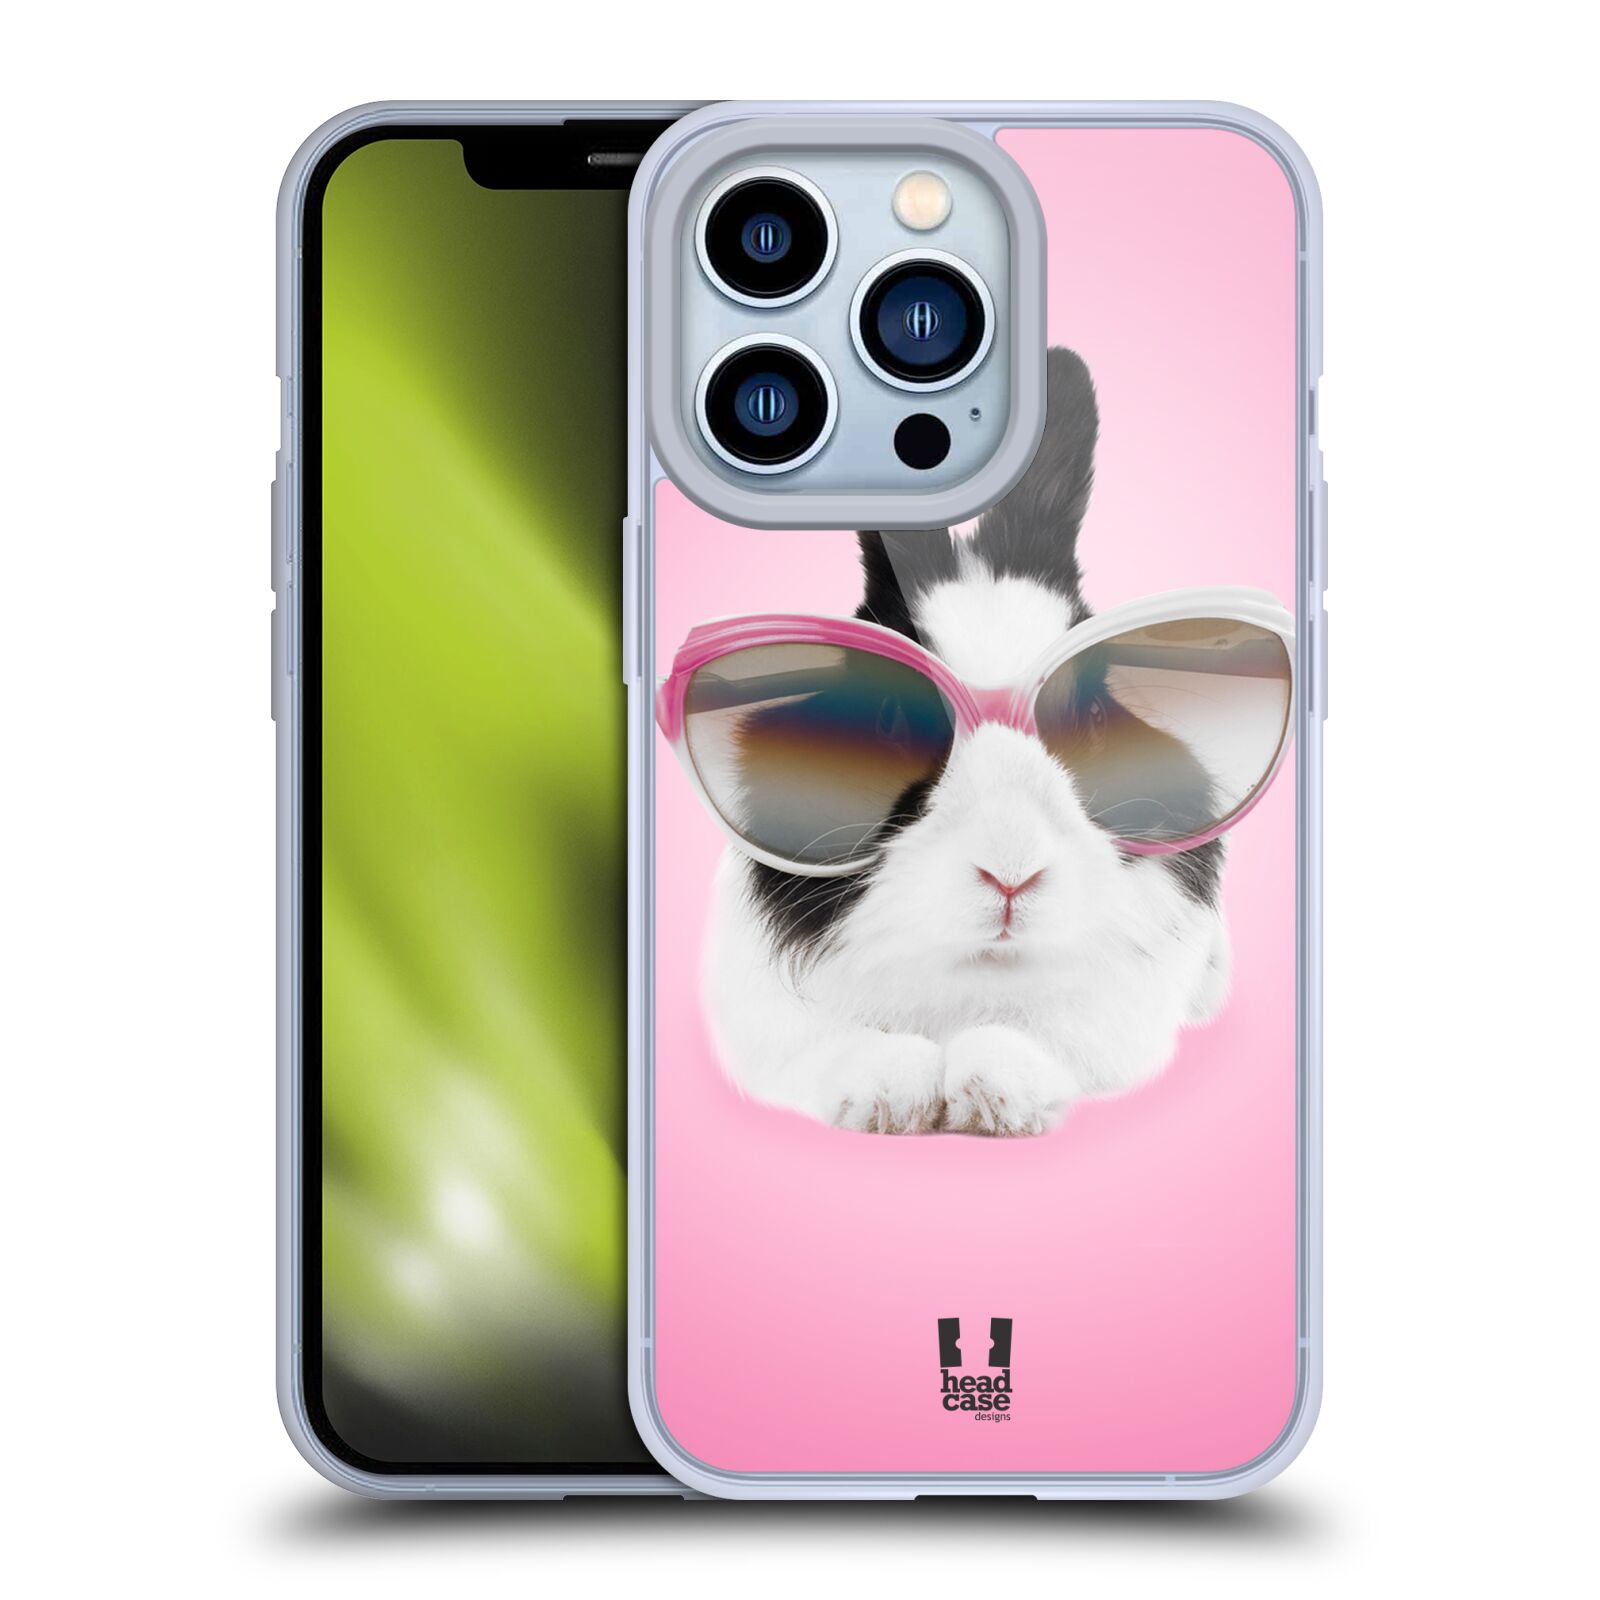 Plastový obal HEAD CASE na mobil Apple Iphone 13 PRO vzor Legrační zvířátka roztomilý králíček s brýlemi růžová